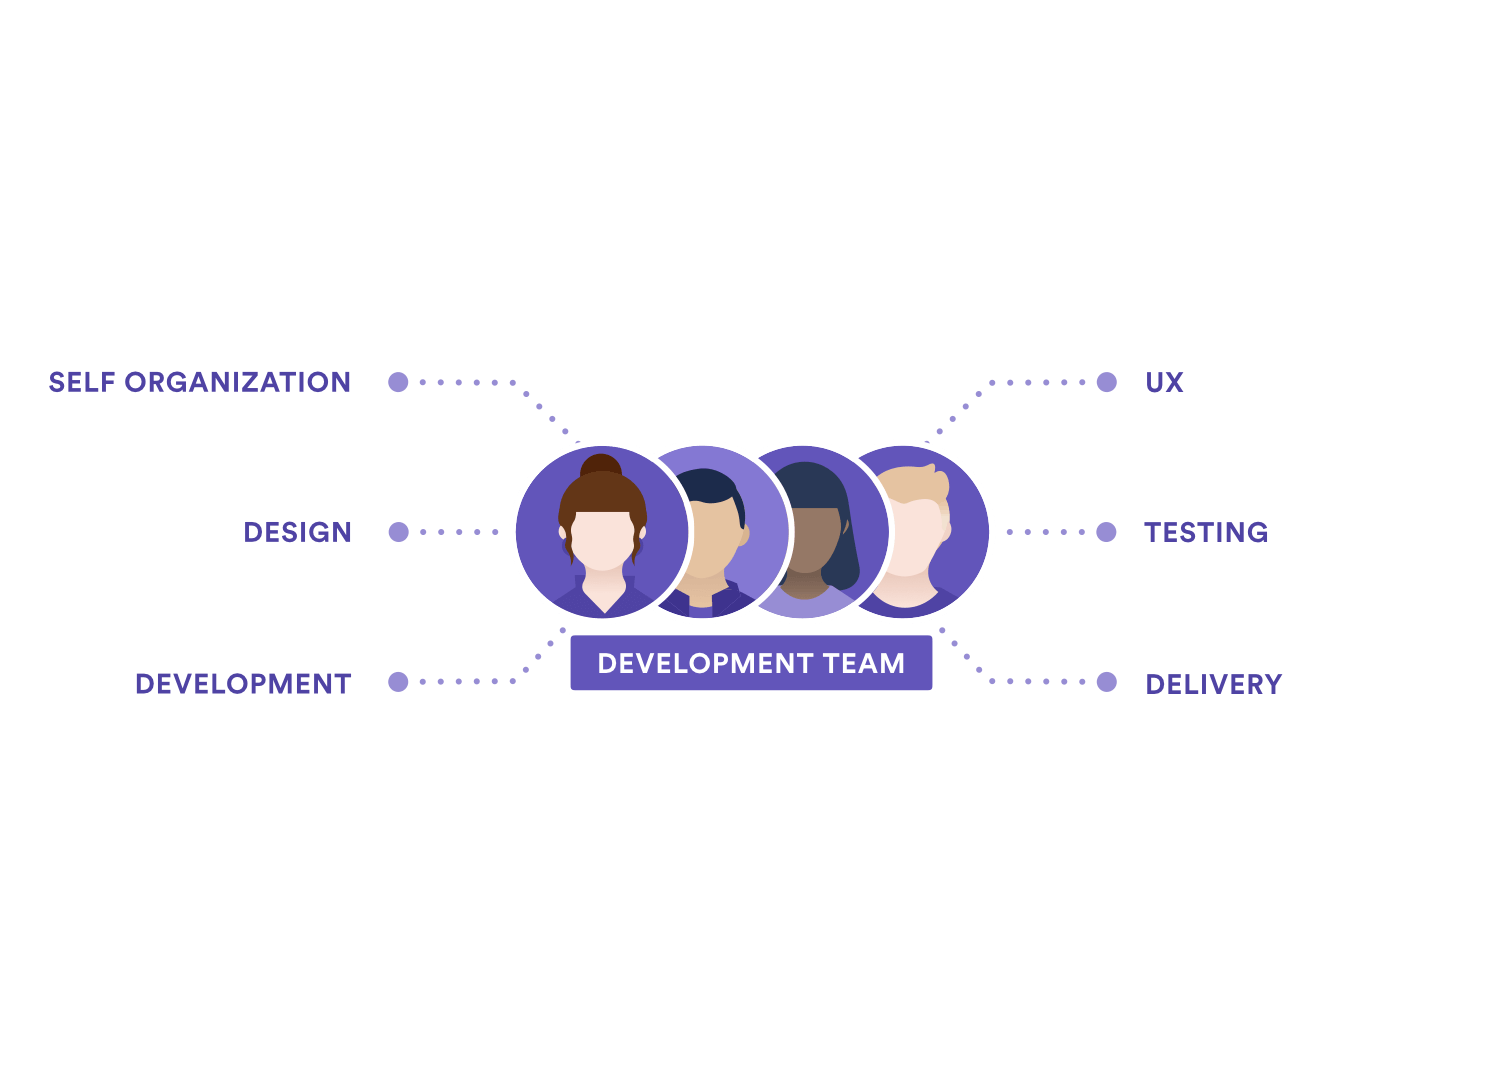 Ein Diagramm, das die Zuständigkeiten des Entwicklerteams zeigt: Selbstorganisation, Design, Entwicklung, UX, Tests, Deployment